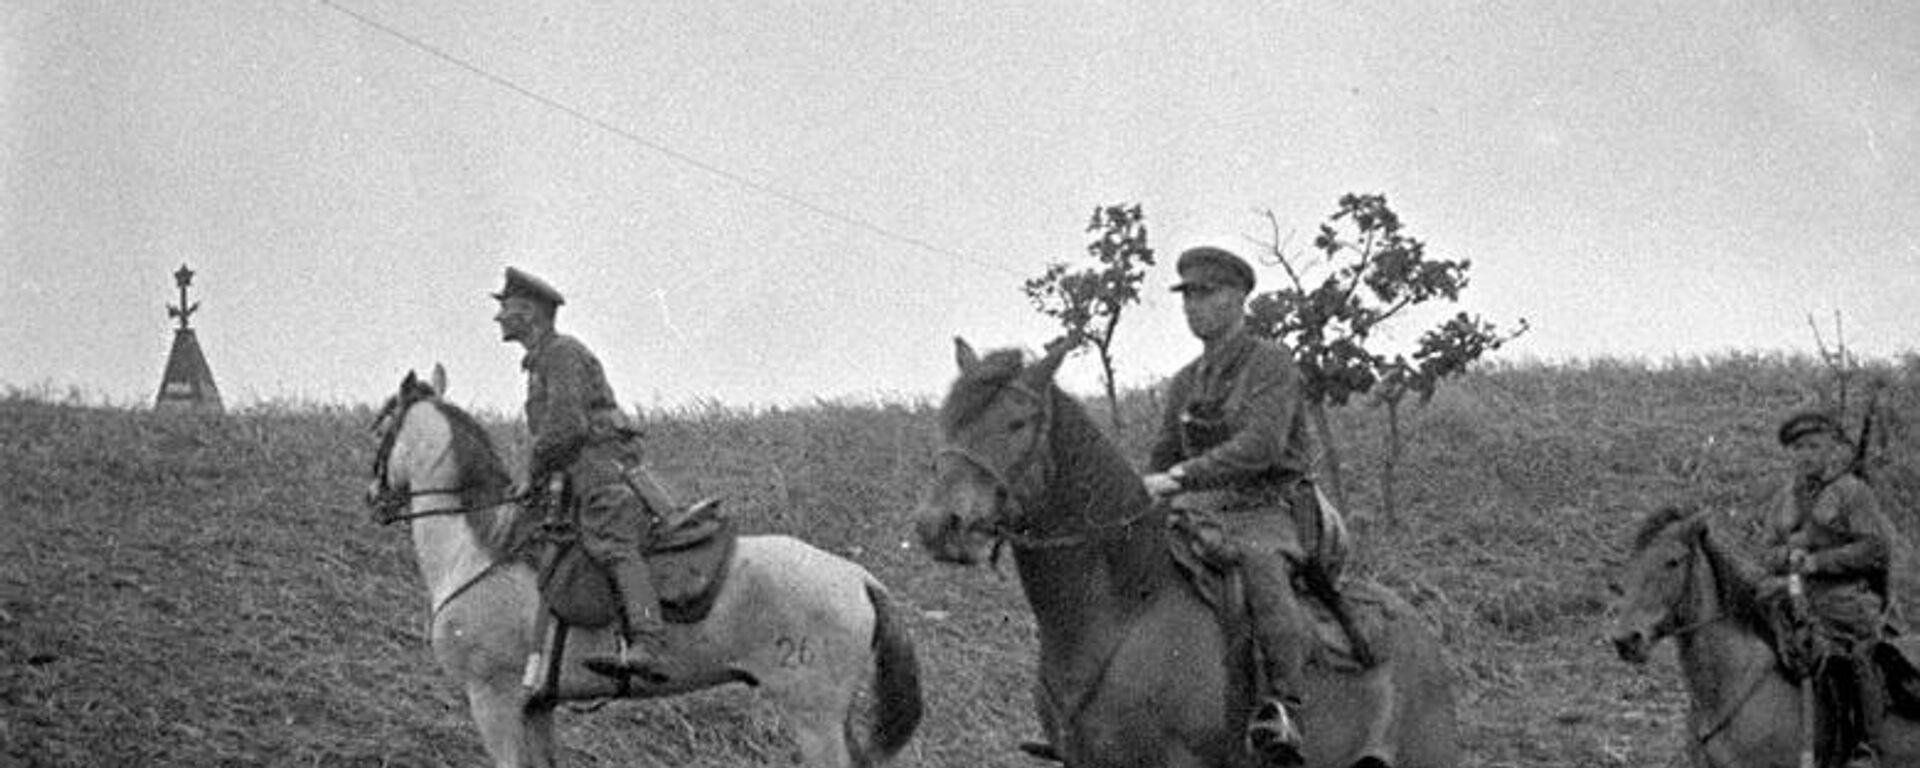 Наряд советских пограничников в районе озера Хасан. 1938 год - Sputnik Latvija, 1920, 06.09.2021